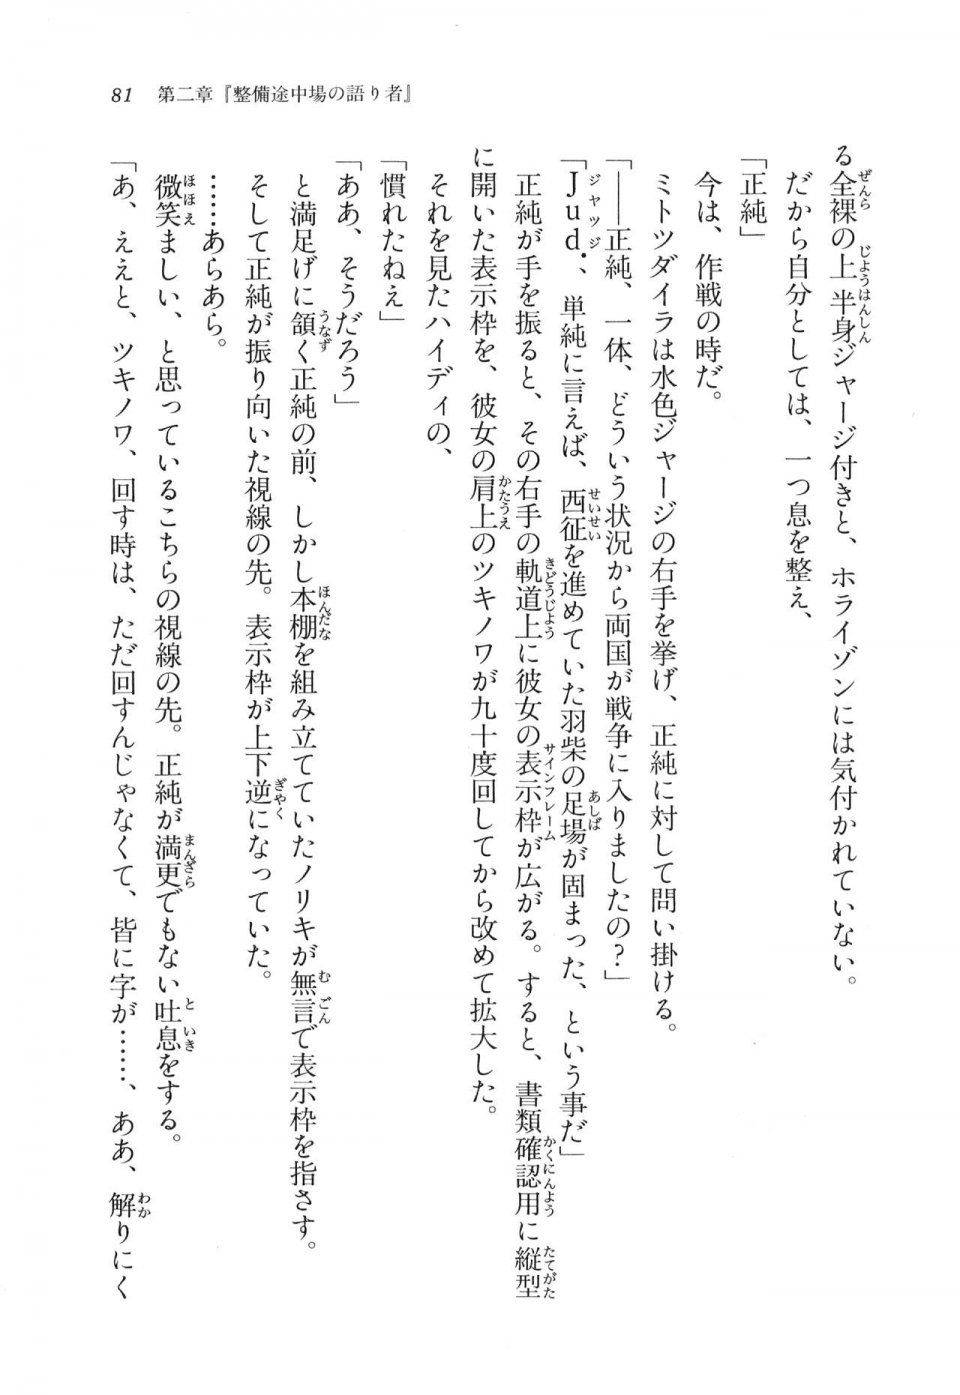 Kyoukai Senjou no Horizon LN Vol 11(5A) - Photo #81